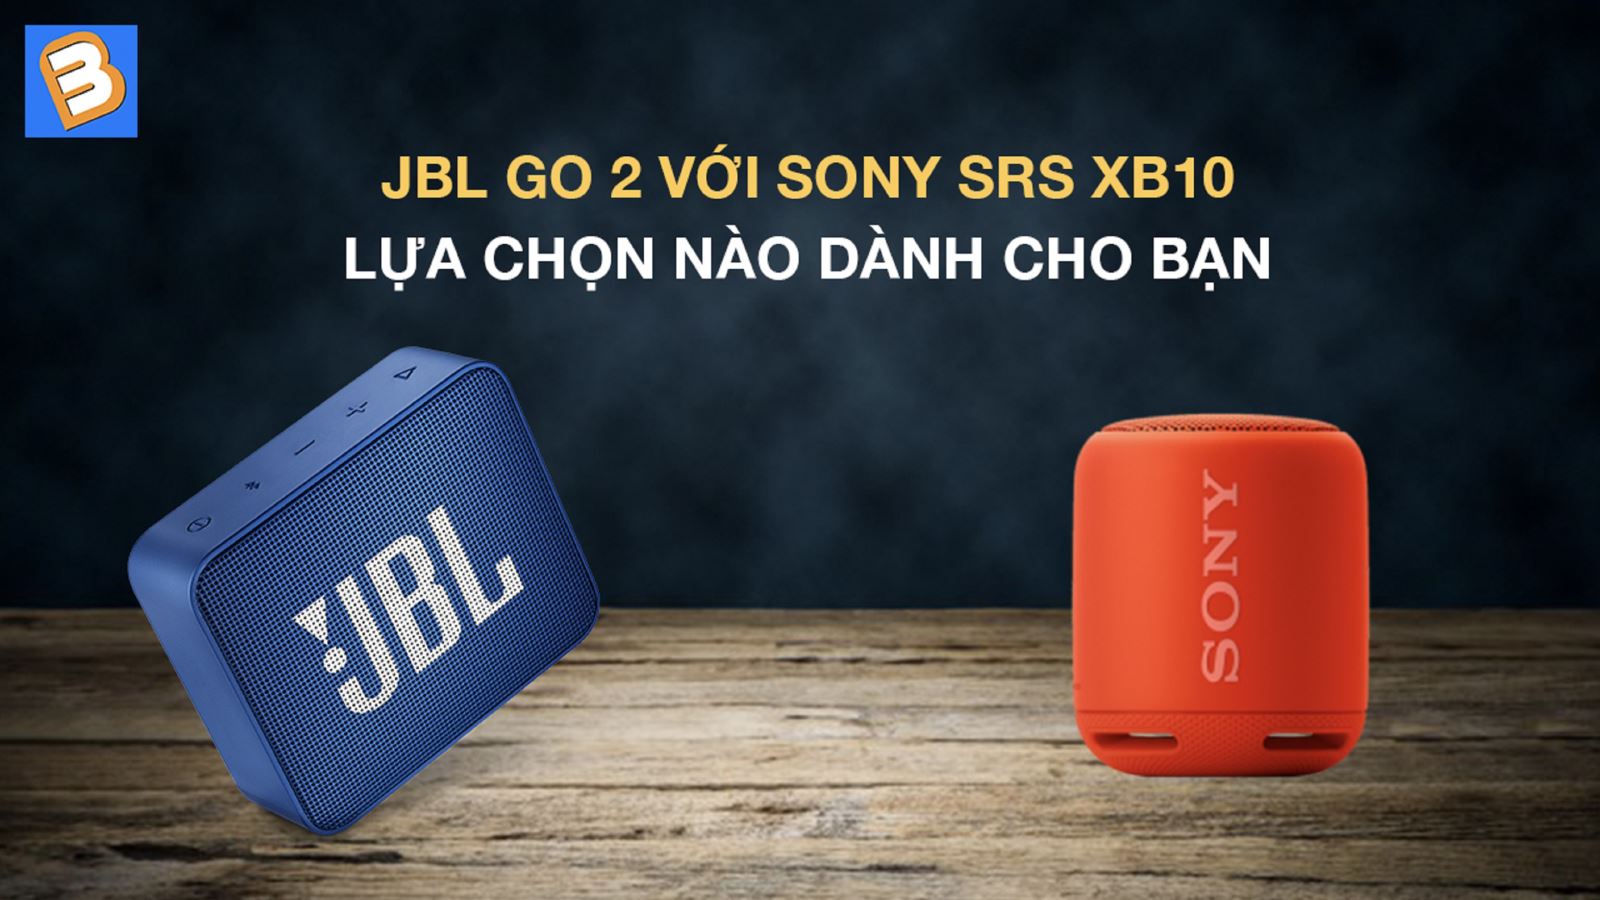 JBL Go 2 với Sony SRS XB10: Lựa chọn nào dành cho bạn